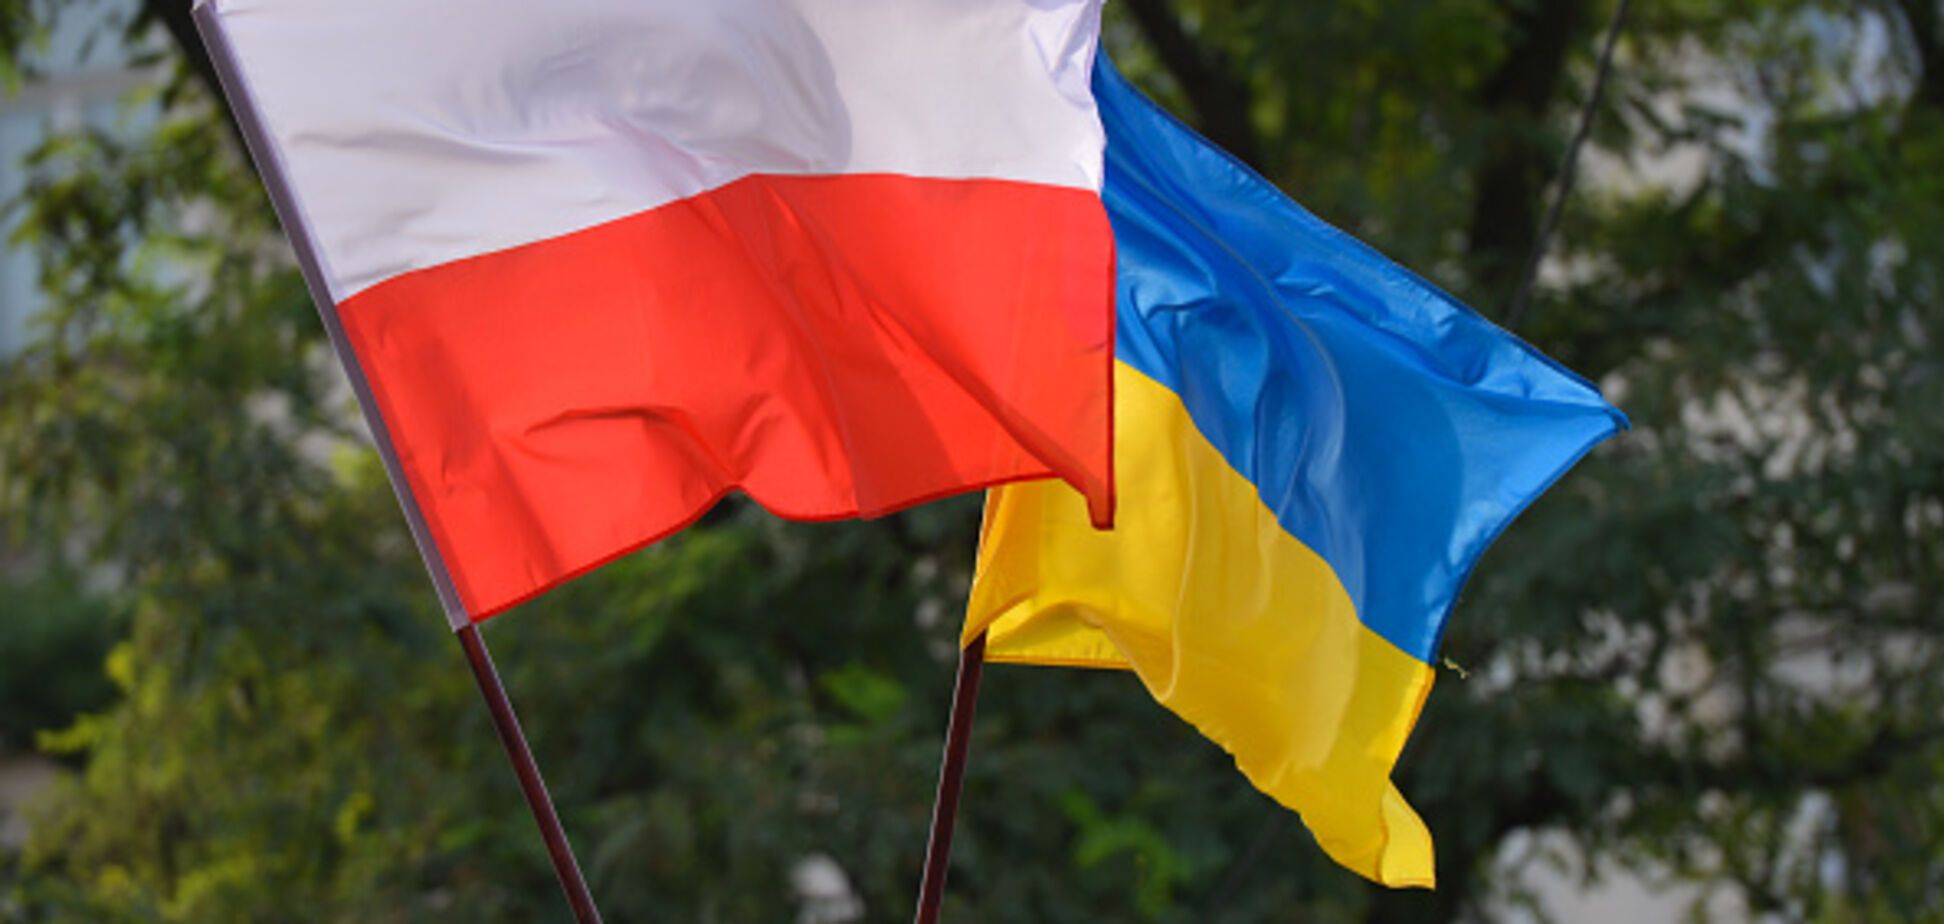 Сварка триває: МЗС Польщі відзначився черговим випадом на адресу України